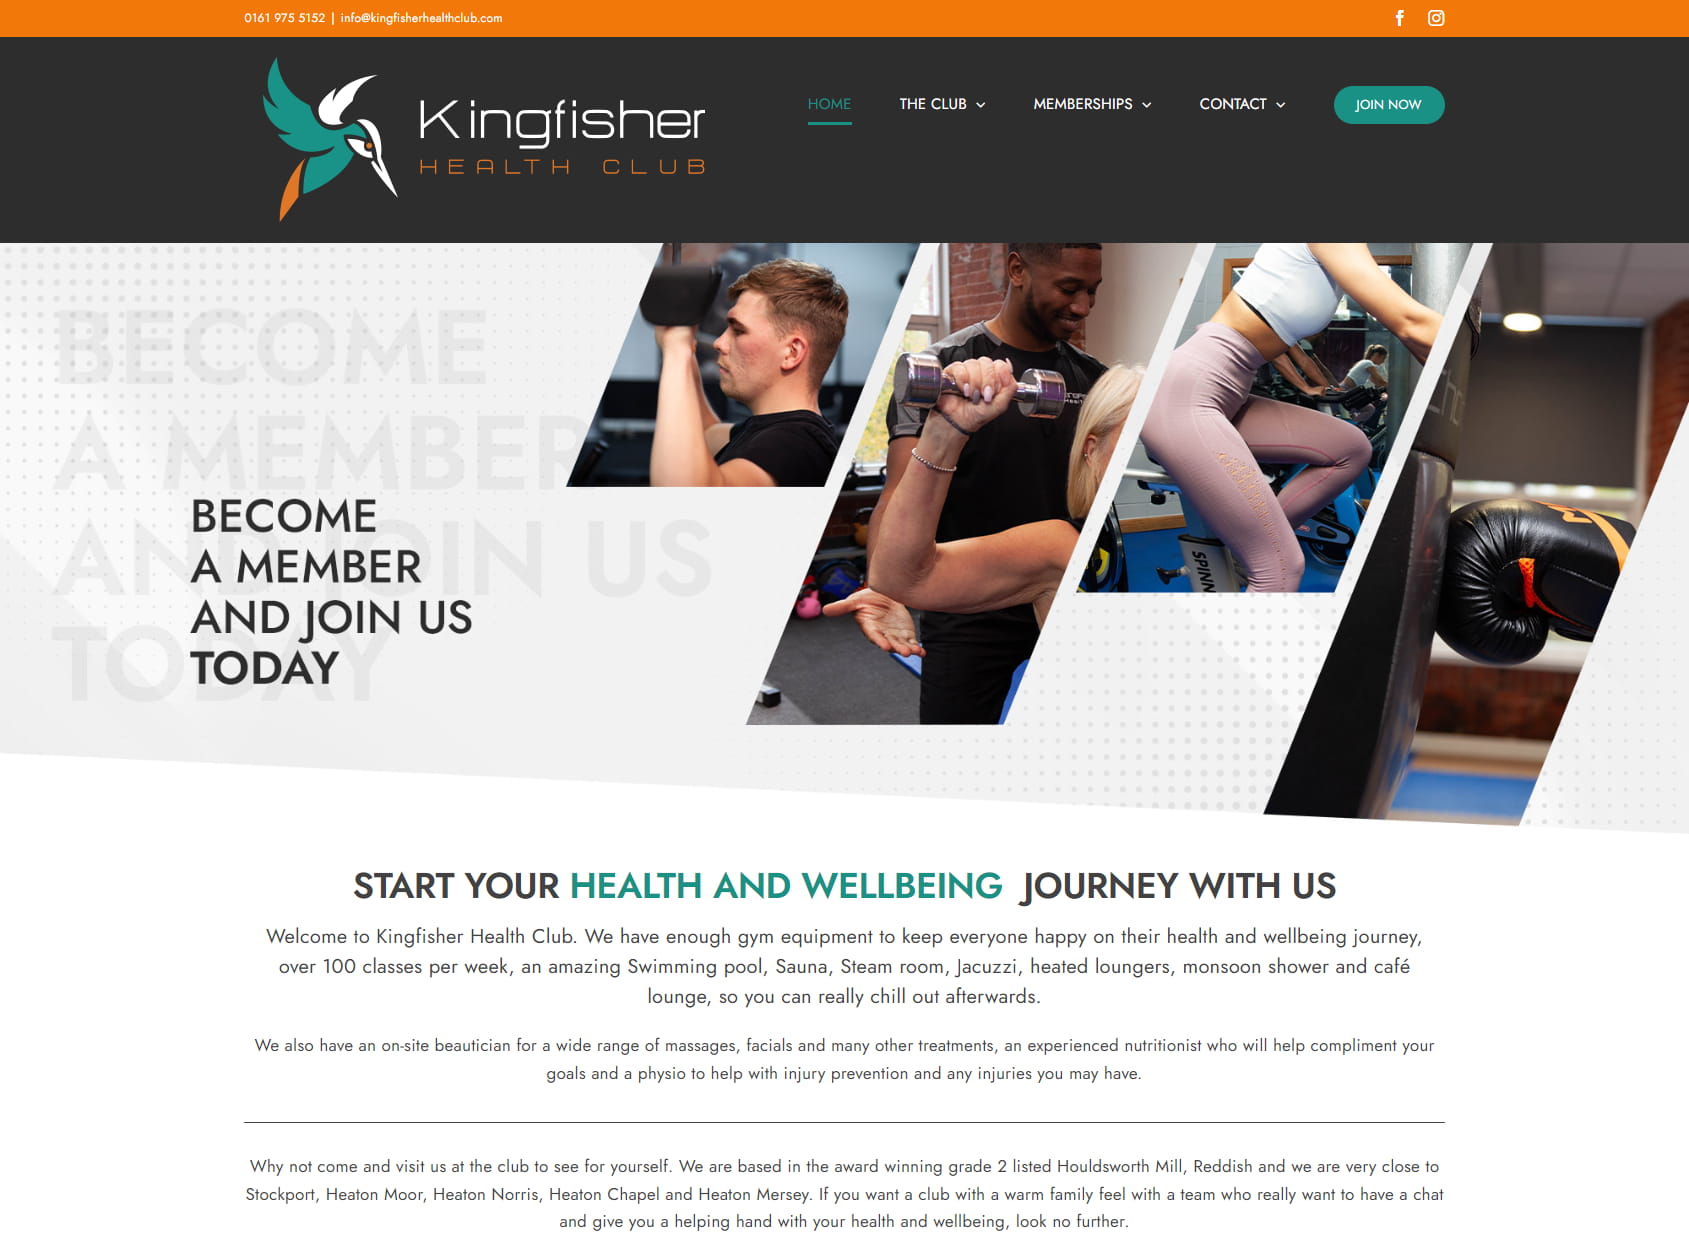 Kingfisher Health Club